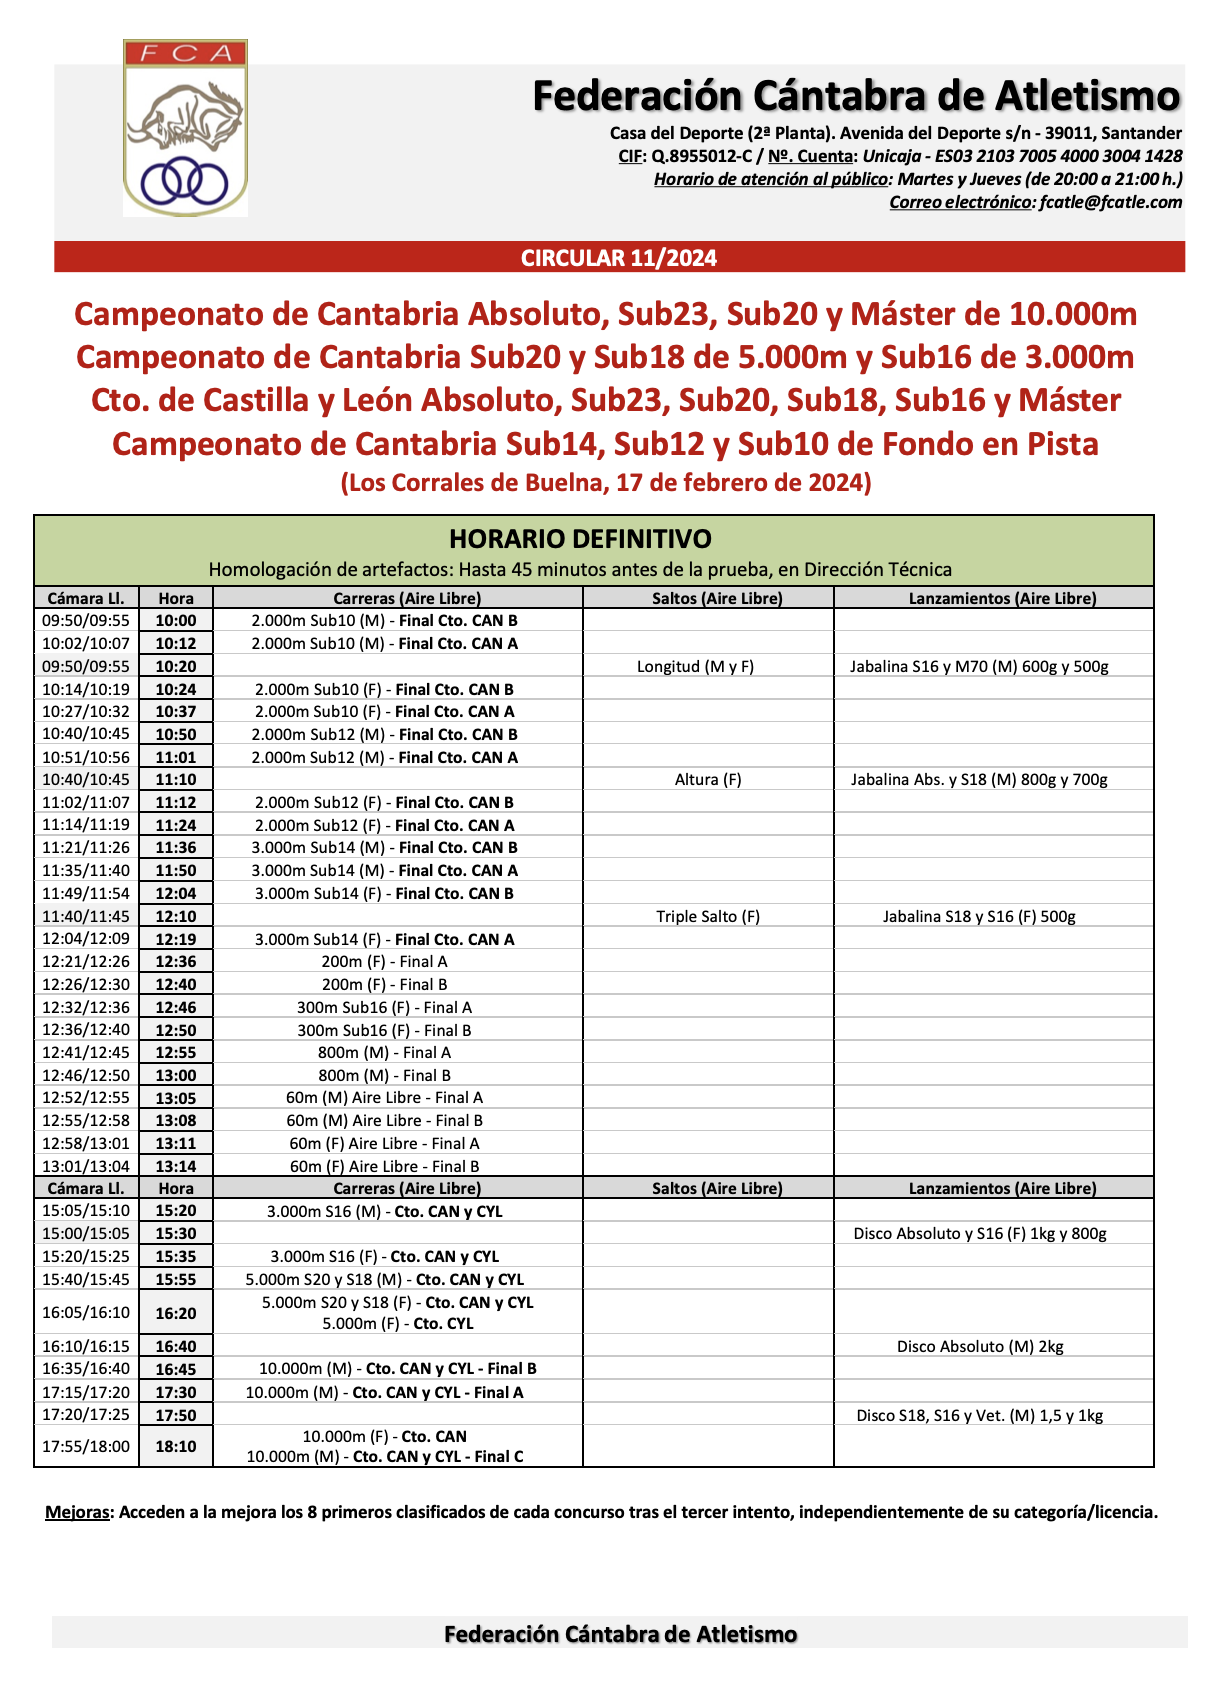 Campeonato de Cantabria y Castilla y León de Fondo en Pista @ Los Corrales de Buelna, Cantabria